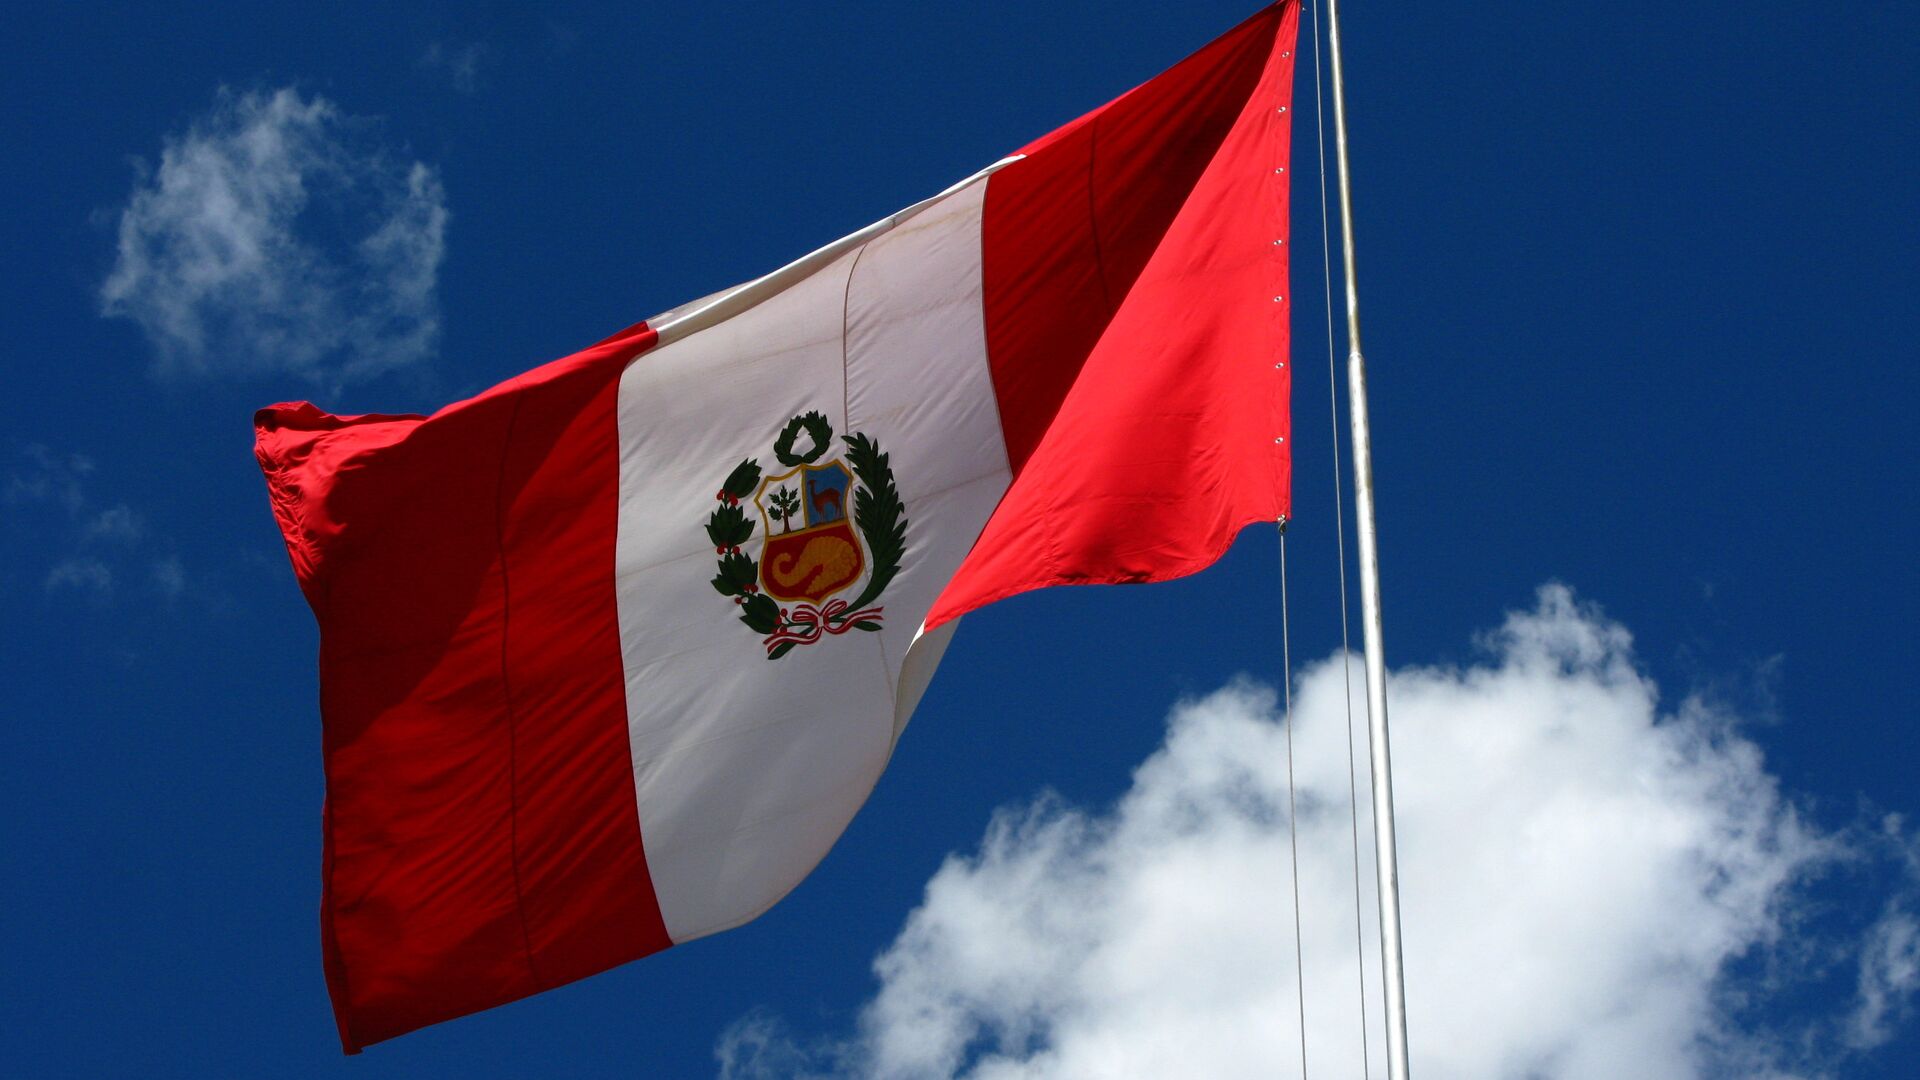 Bandera del Perú - Sputnik Mundo, 1920, 28.07.2021